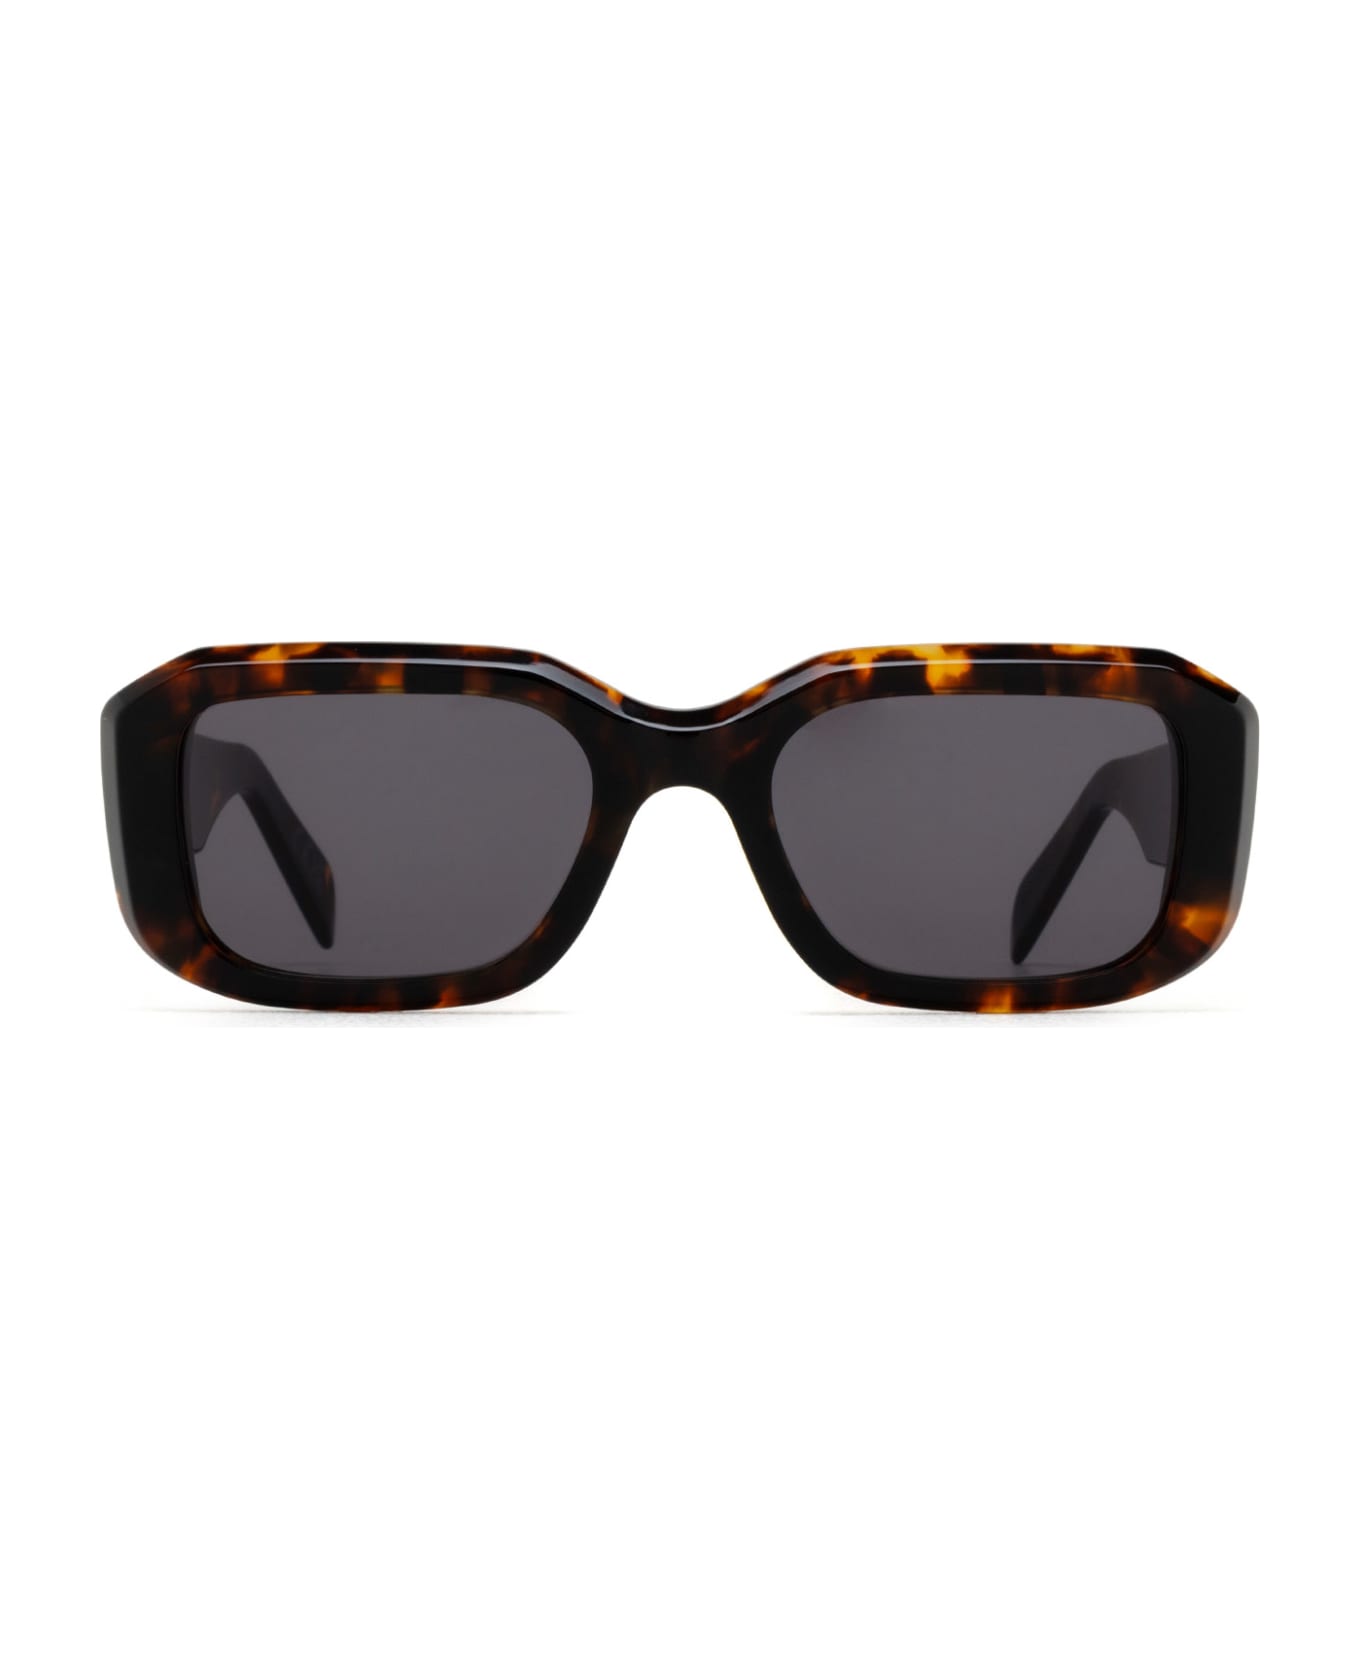 RETROSUPERFUTURE Sagrado Burnt Havana Sunglasses - Burnt Havana サングラス